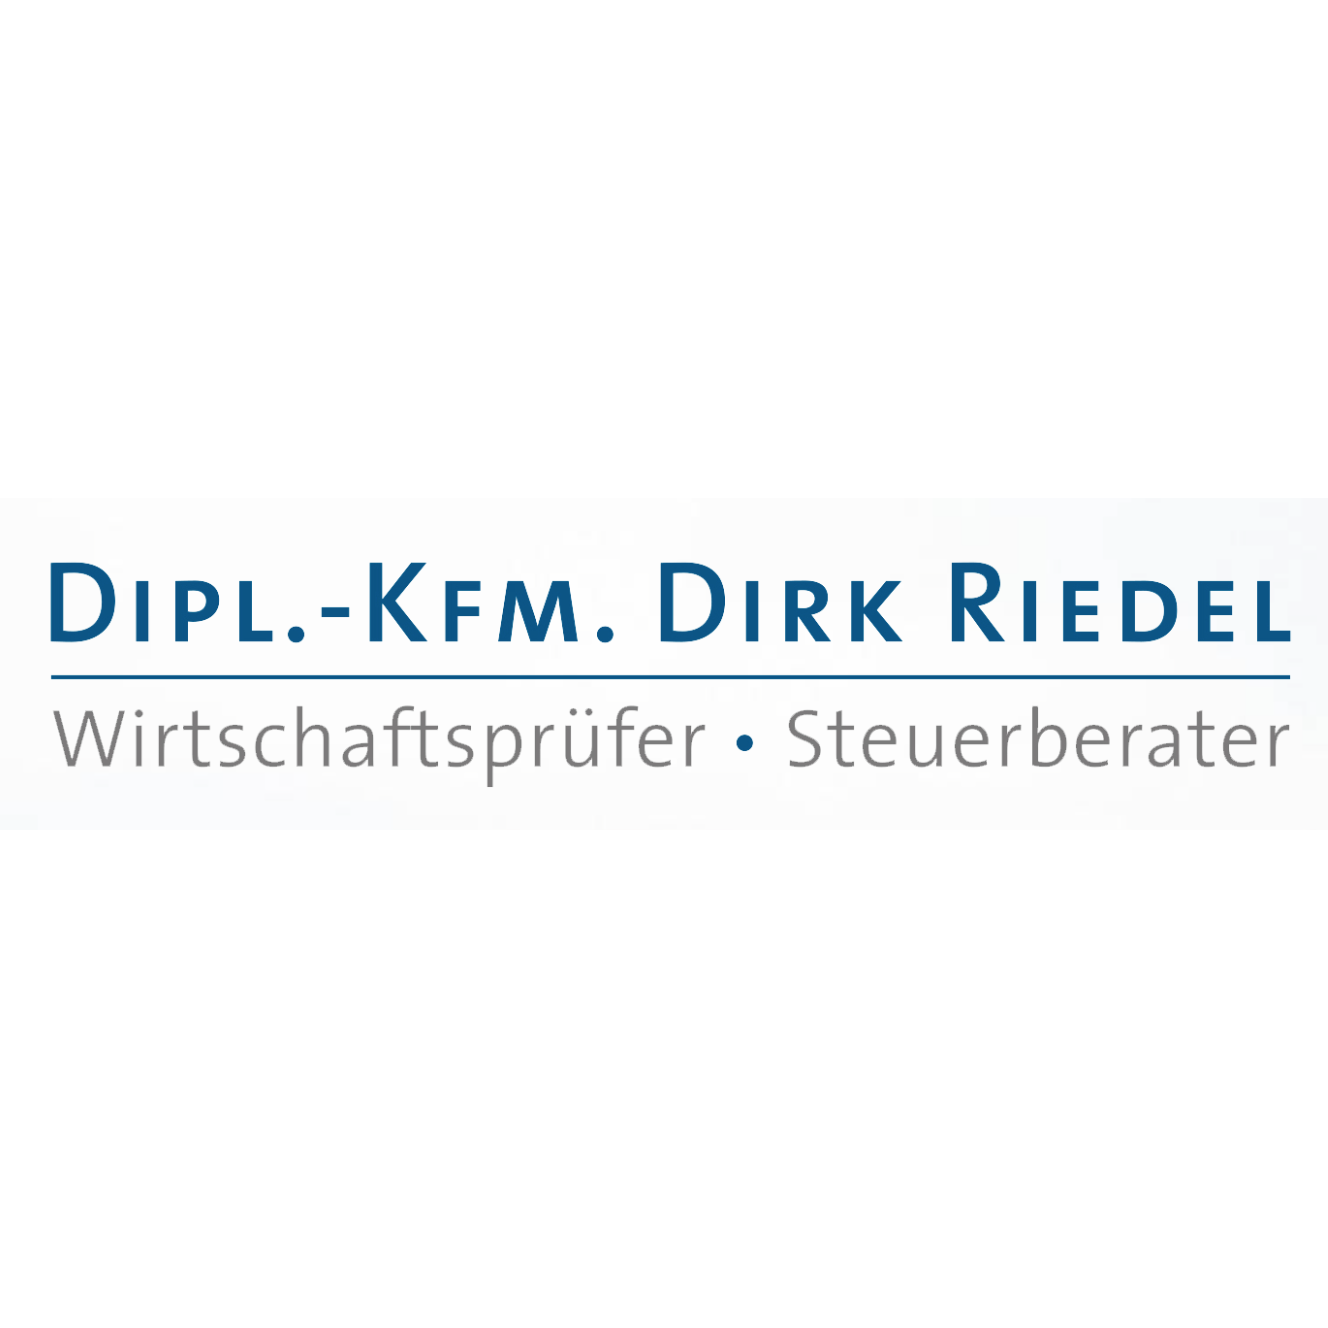 Dipl.-Kfm. Dirk Riedel Wirtschaftsprüfer Steuerberater in Frankenthal in der Pfalz - Logo